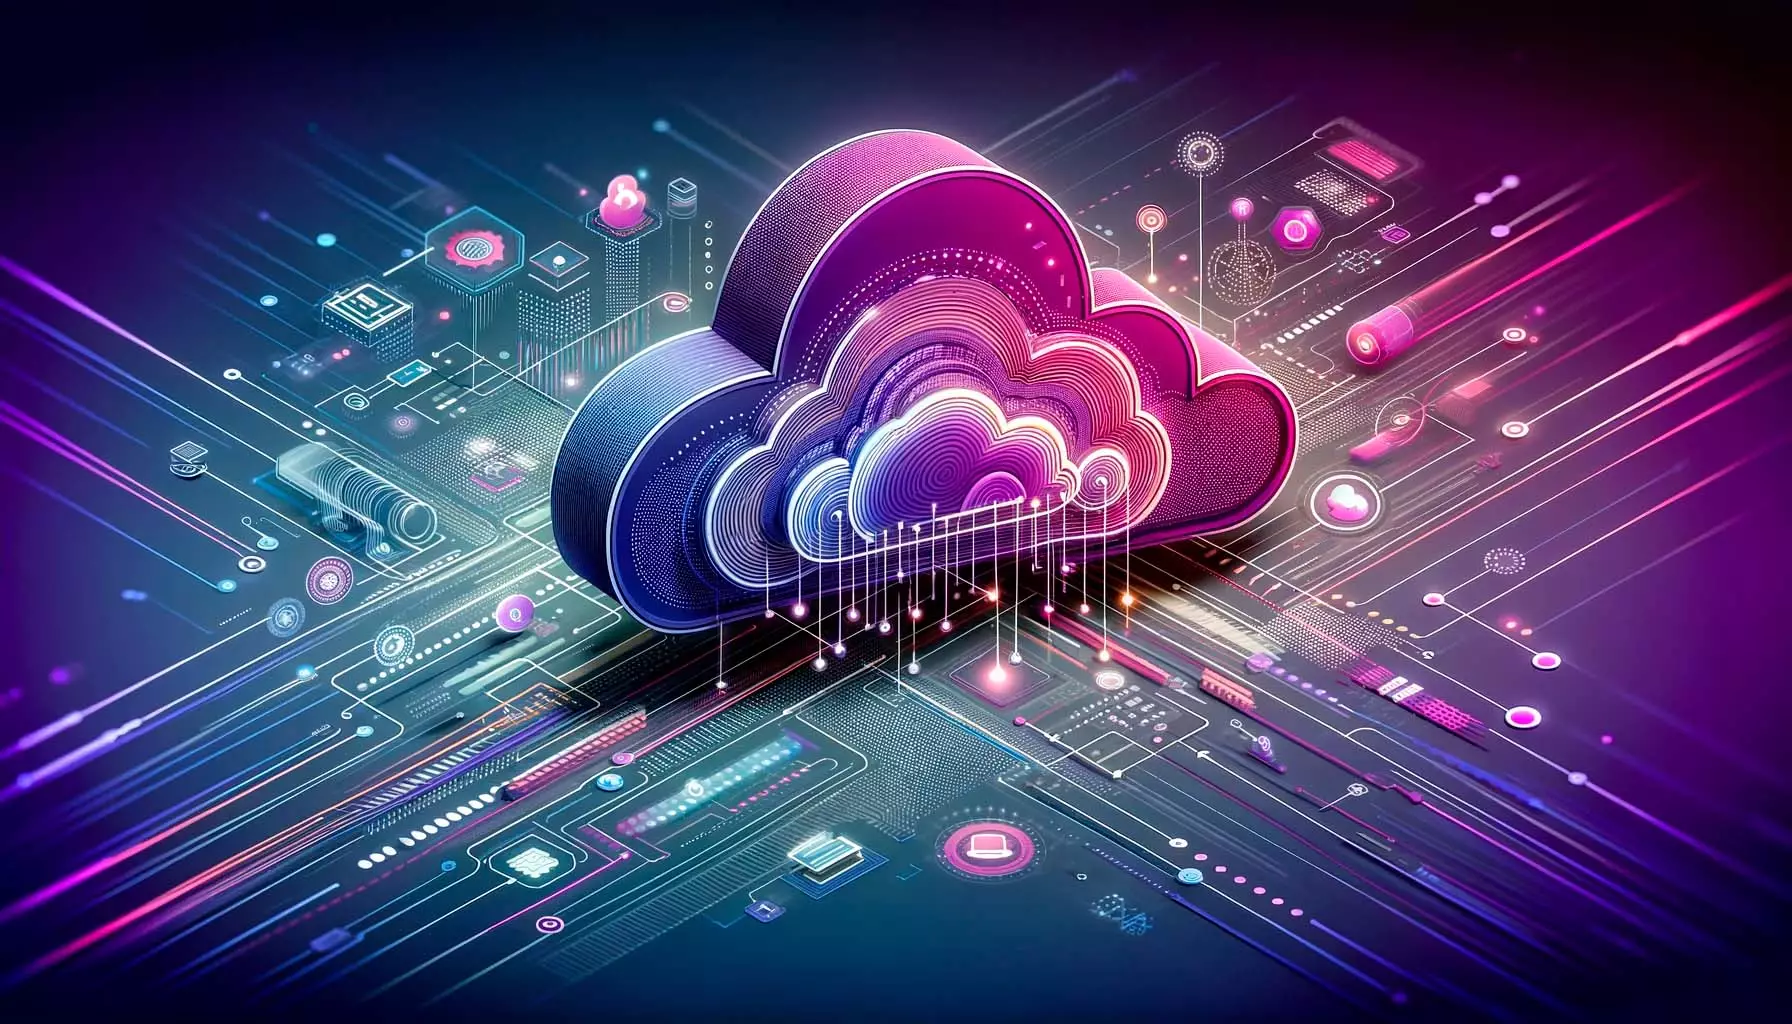 Representación gráfica de la computación en la nube, mostrando una nube estilizada interconectada con dispositivos y redes digitales en un fondo que mezcla tonos morados de cloud.gal con colores tecnológicos, simbolizando la innovación y la eficiencia en el mundo empresarial moderno